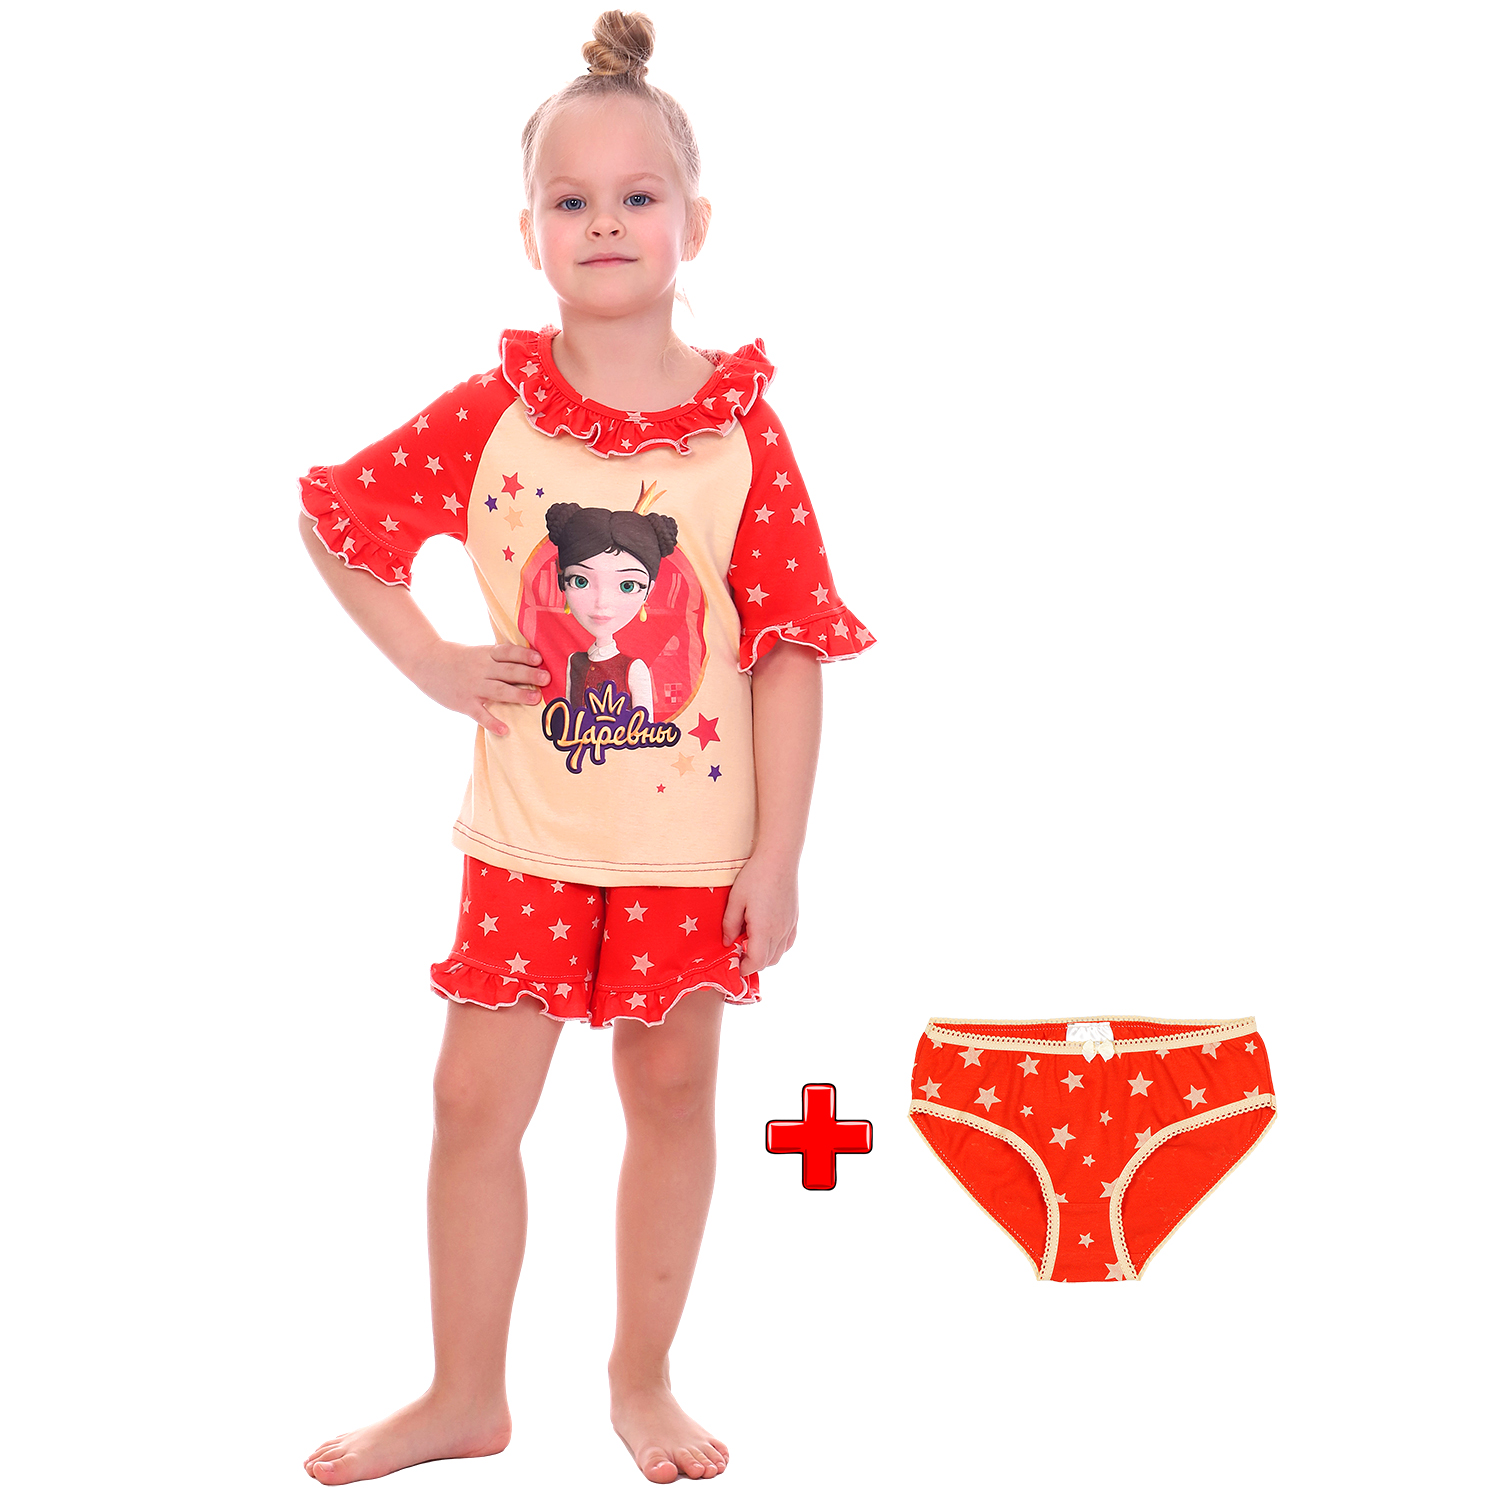 Пижама Царевны Детская Одежда S0414К/молочный_красный - фото 2